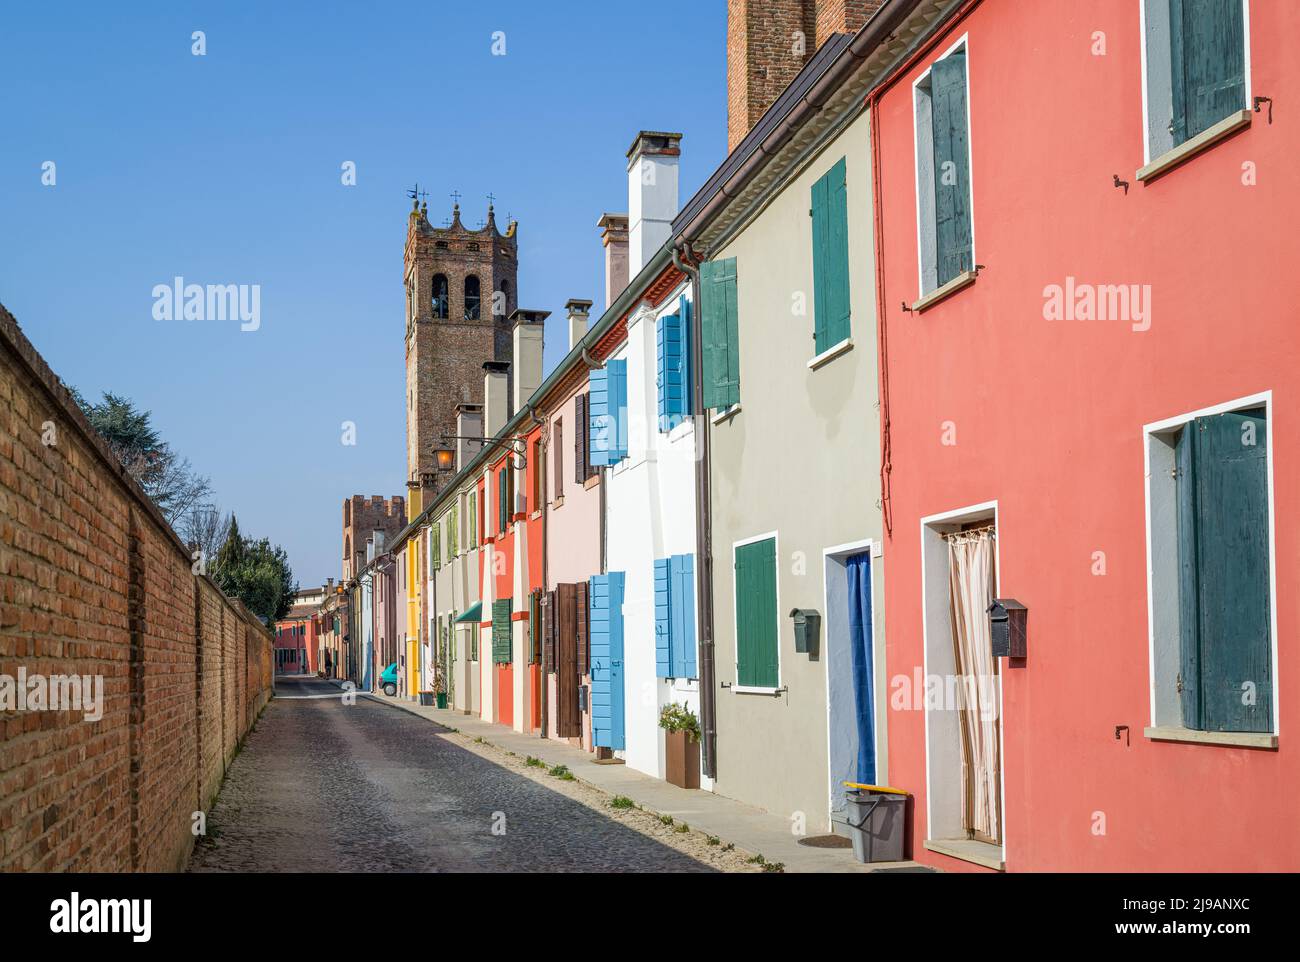 Italia, Montagnana, casas de colores tradicionales que se apoyan en las antiguas murallas medievales que rodean la ciudad Foto de stock